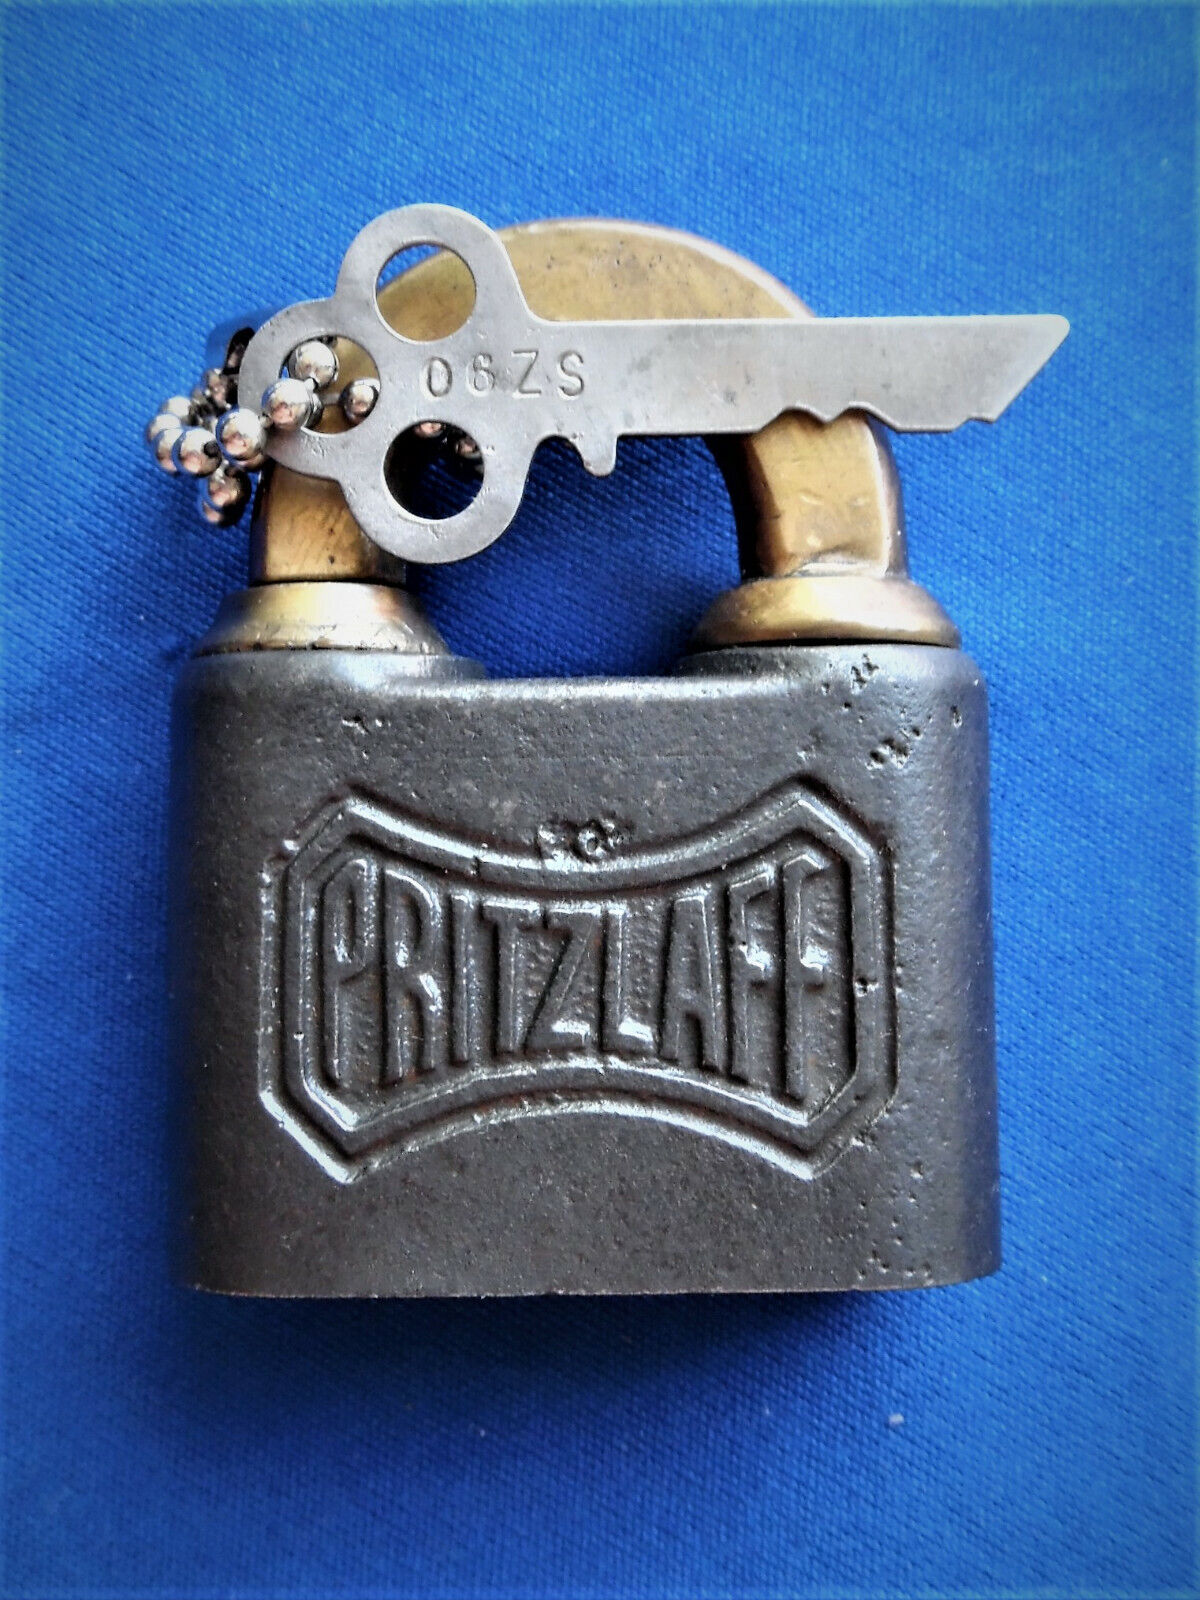 antique vintage PRITZLAFF pin tumbler tools  machinery plates padlock lock w key